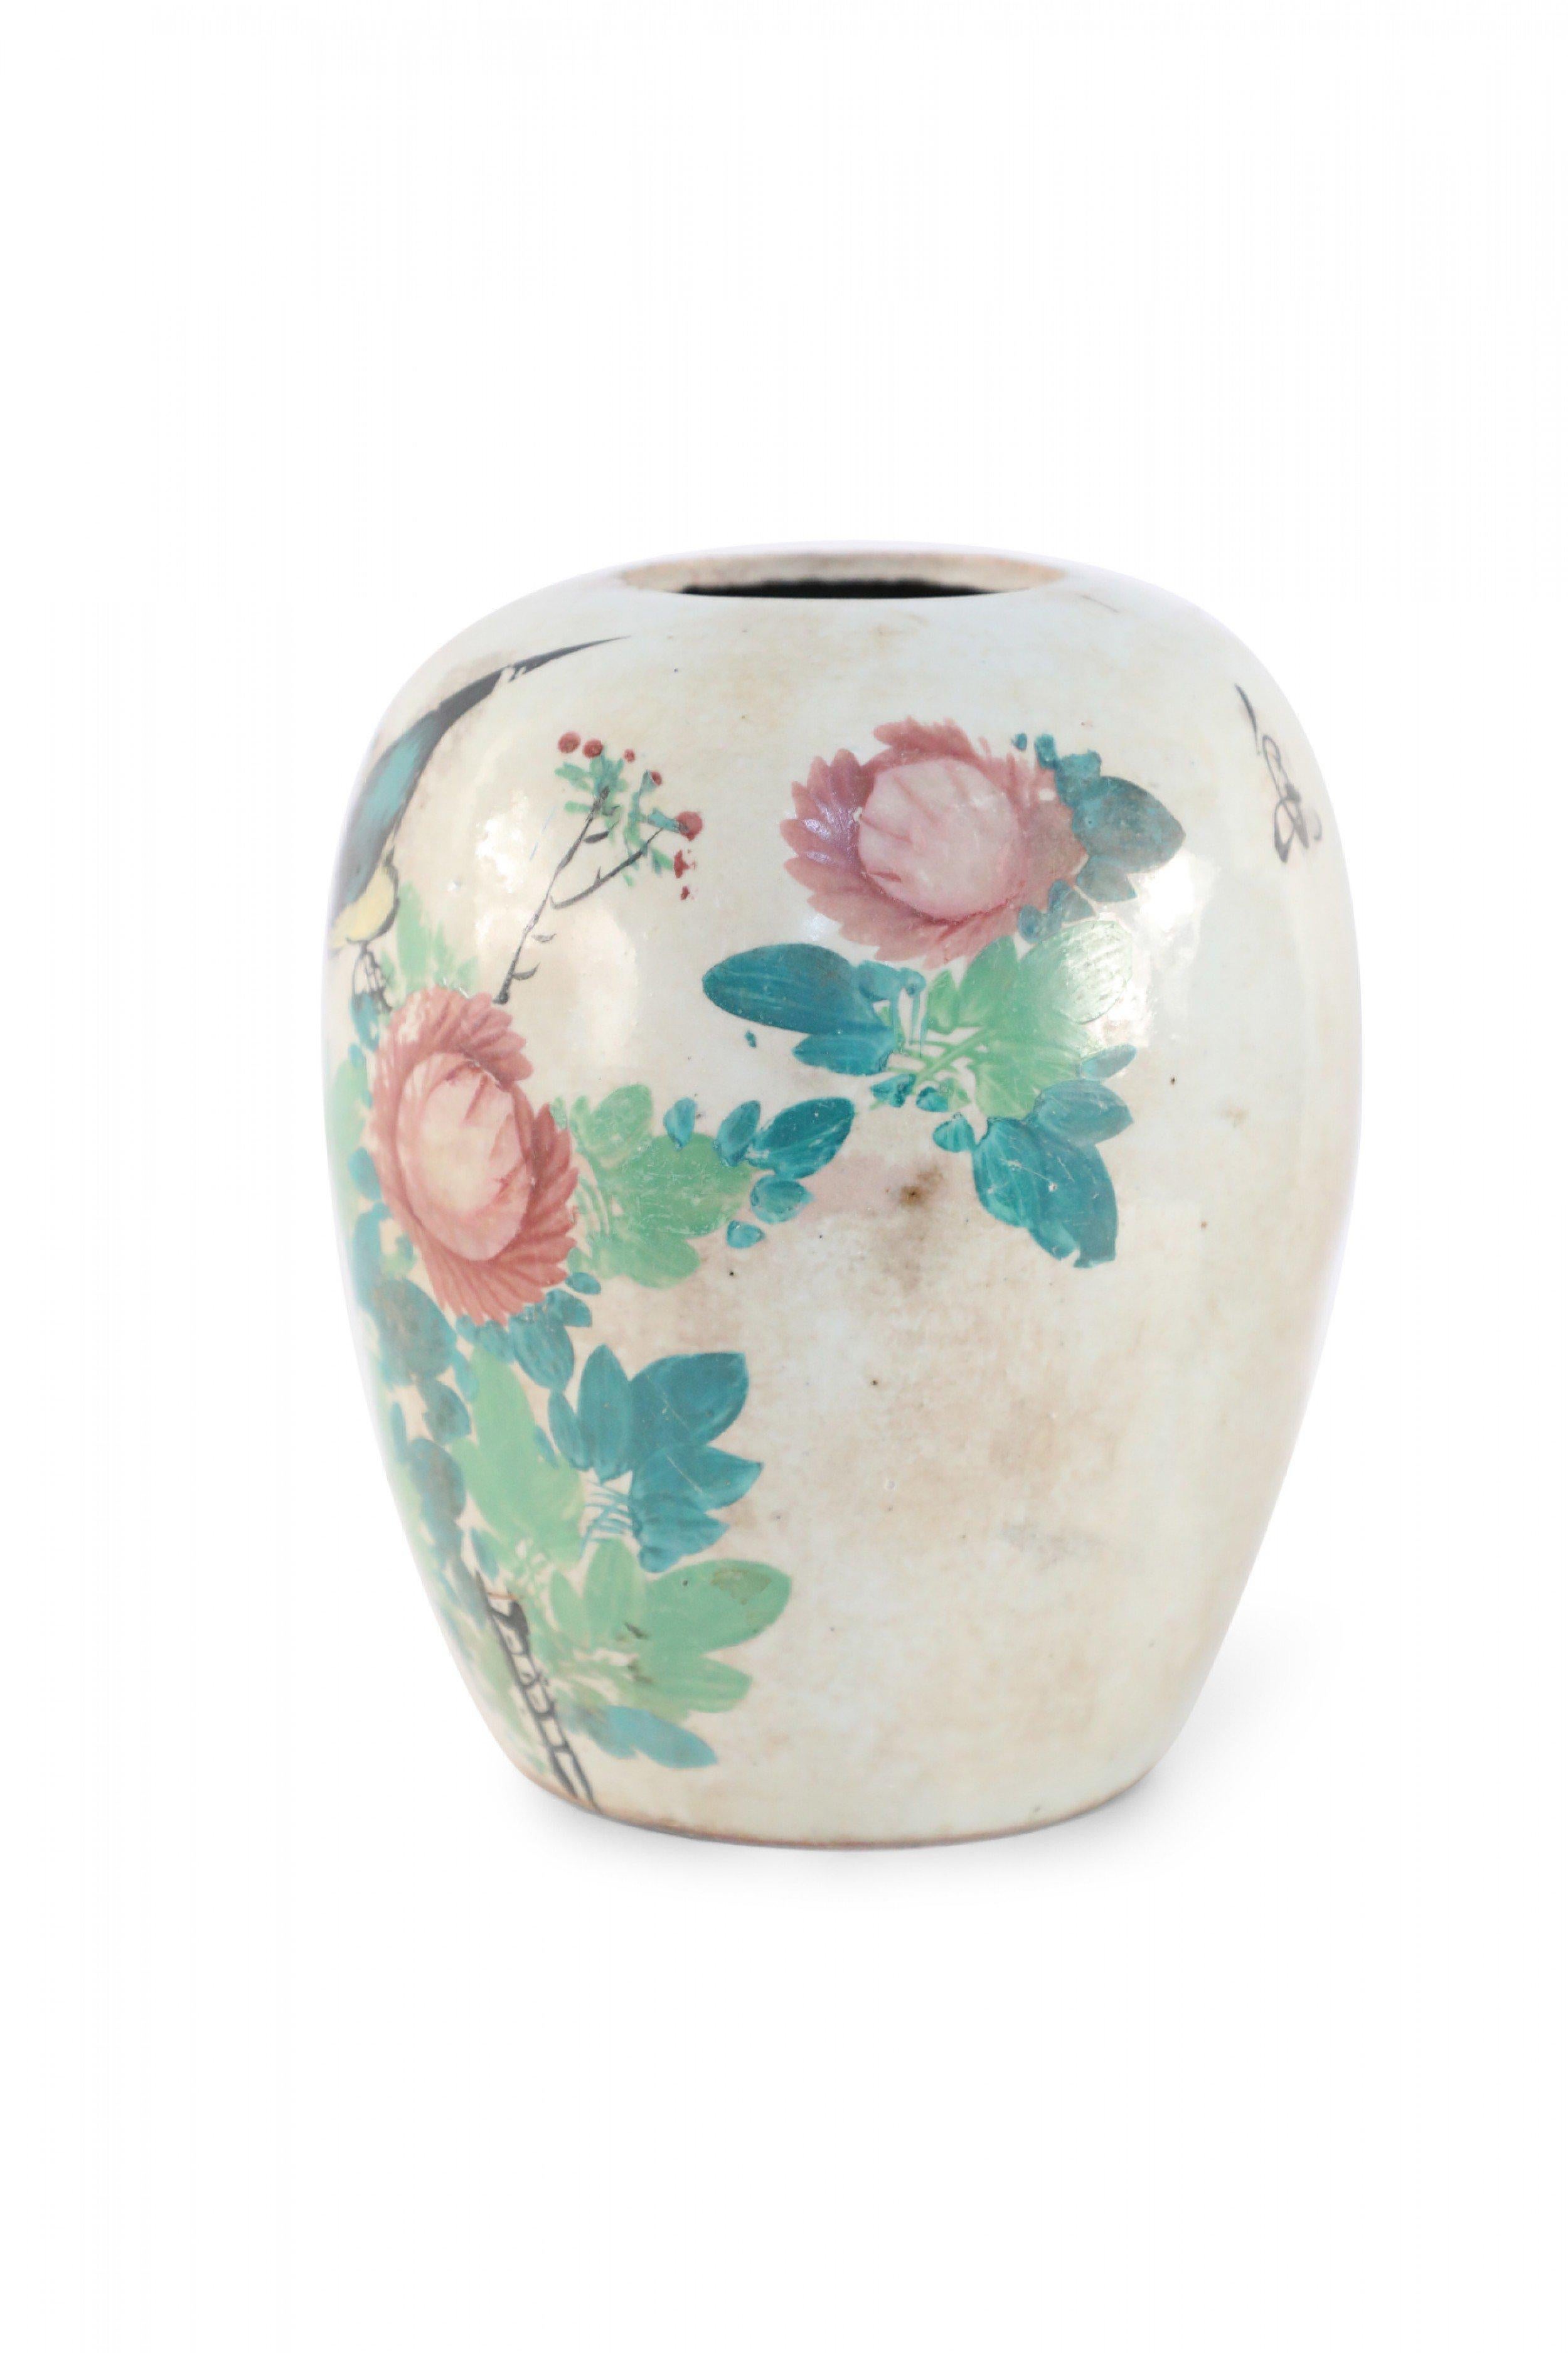 Vase antique chinois (début du 20e siècle) en porcelaine bulbeuse avec des fleurs roses et un oiseau à la poitrine jaune au milieu de feuilles vertes sur une face et des caractères sur le revers. Il y a des craquelures mouchetées sur la glaçure.
 